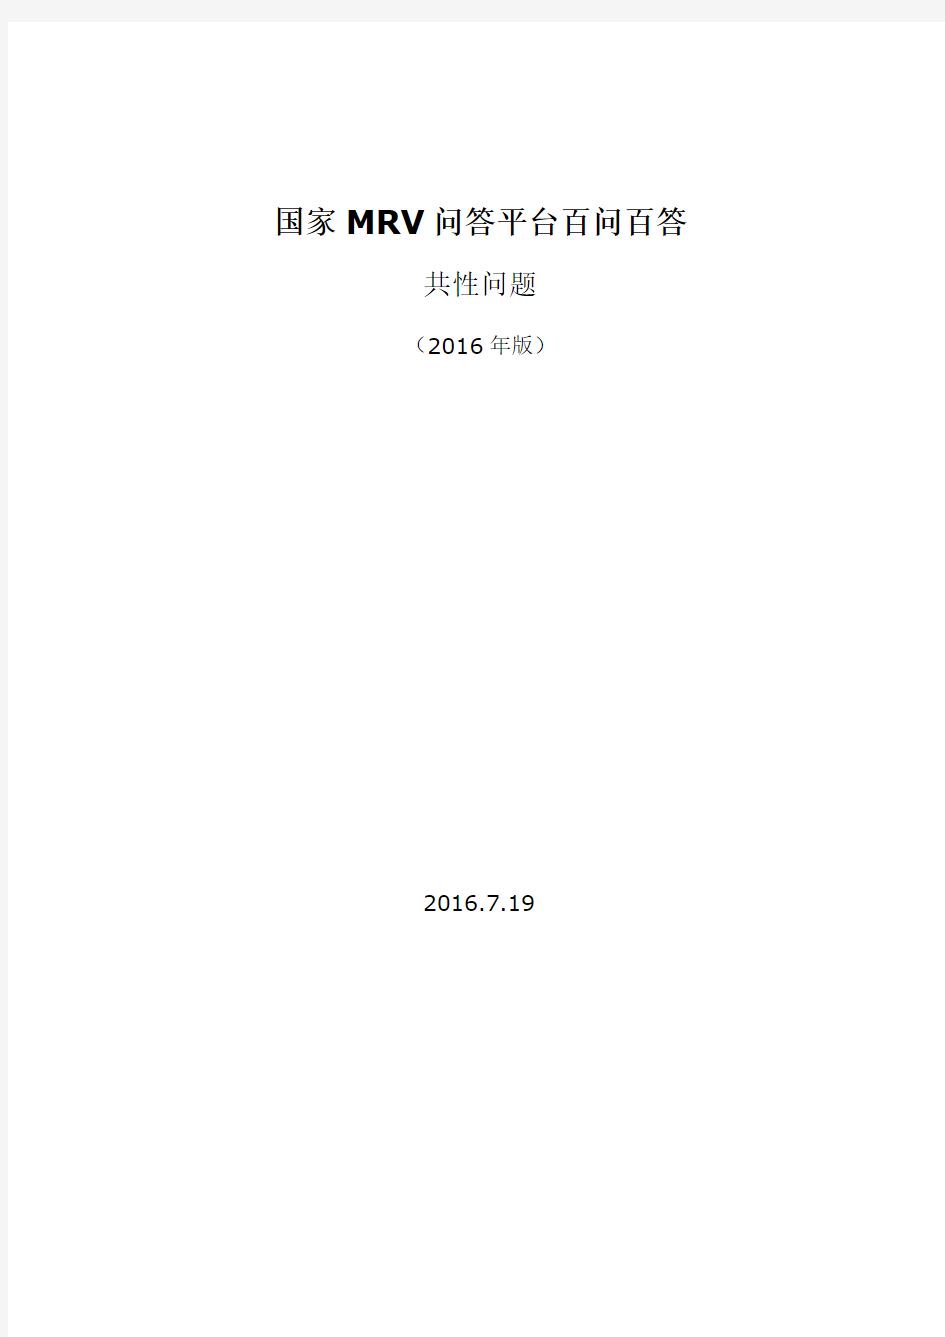 国家MRV问答平台百问百答(共性问题-截至20160719)